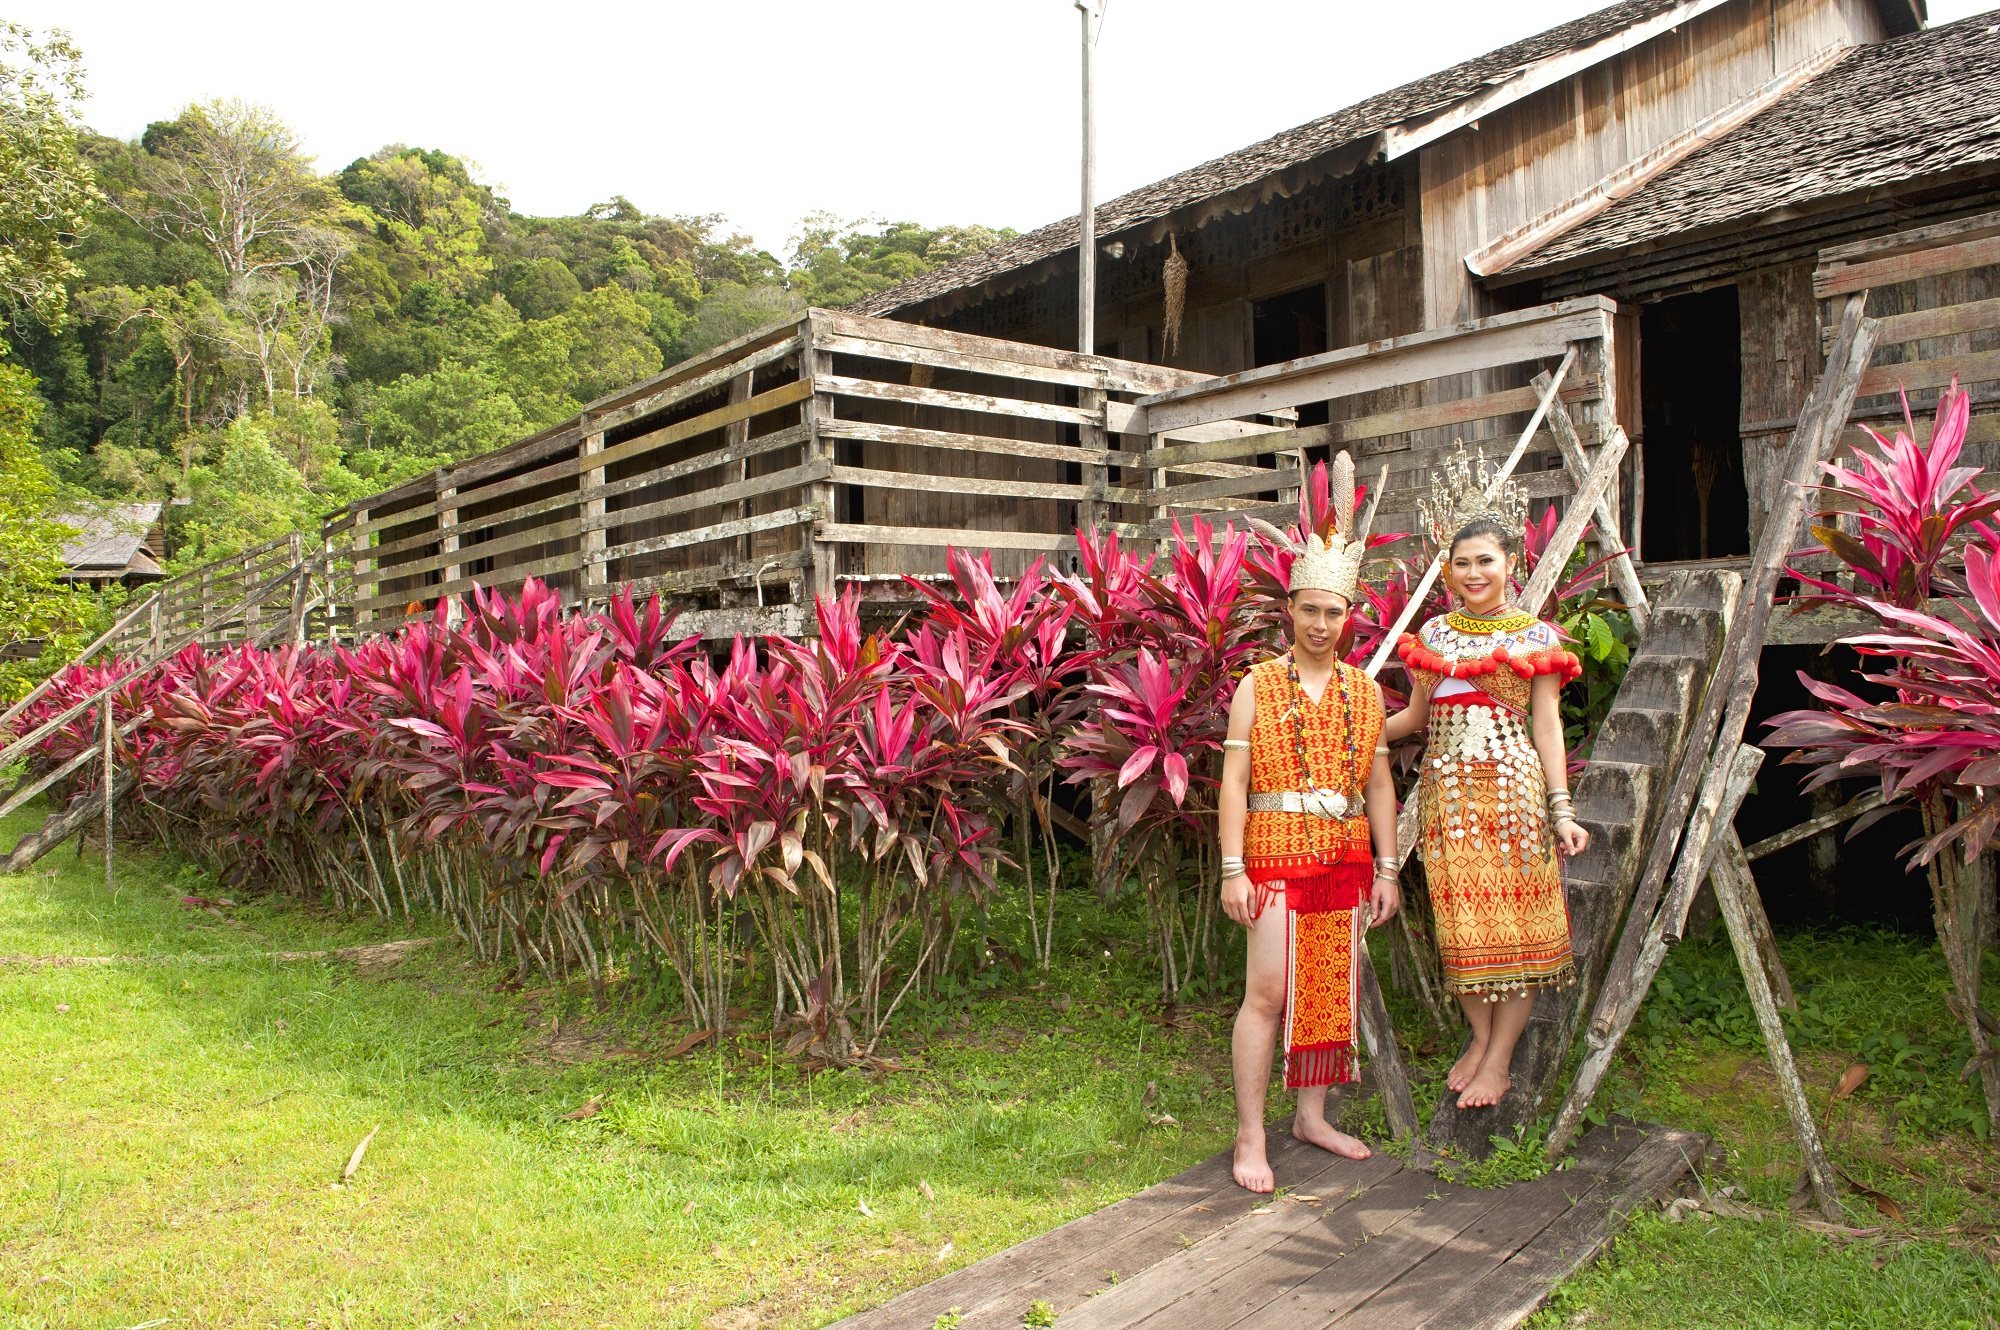 Where to go in Borneo - Visit the Sarawak Cultural village